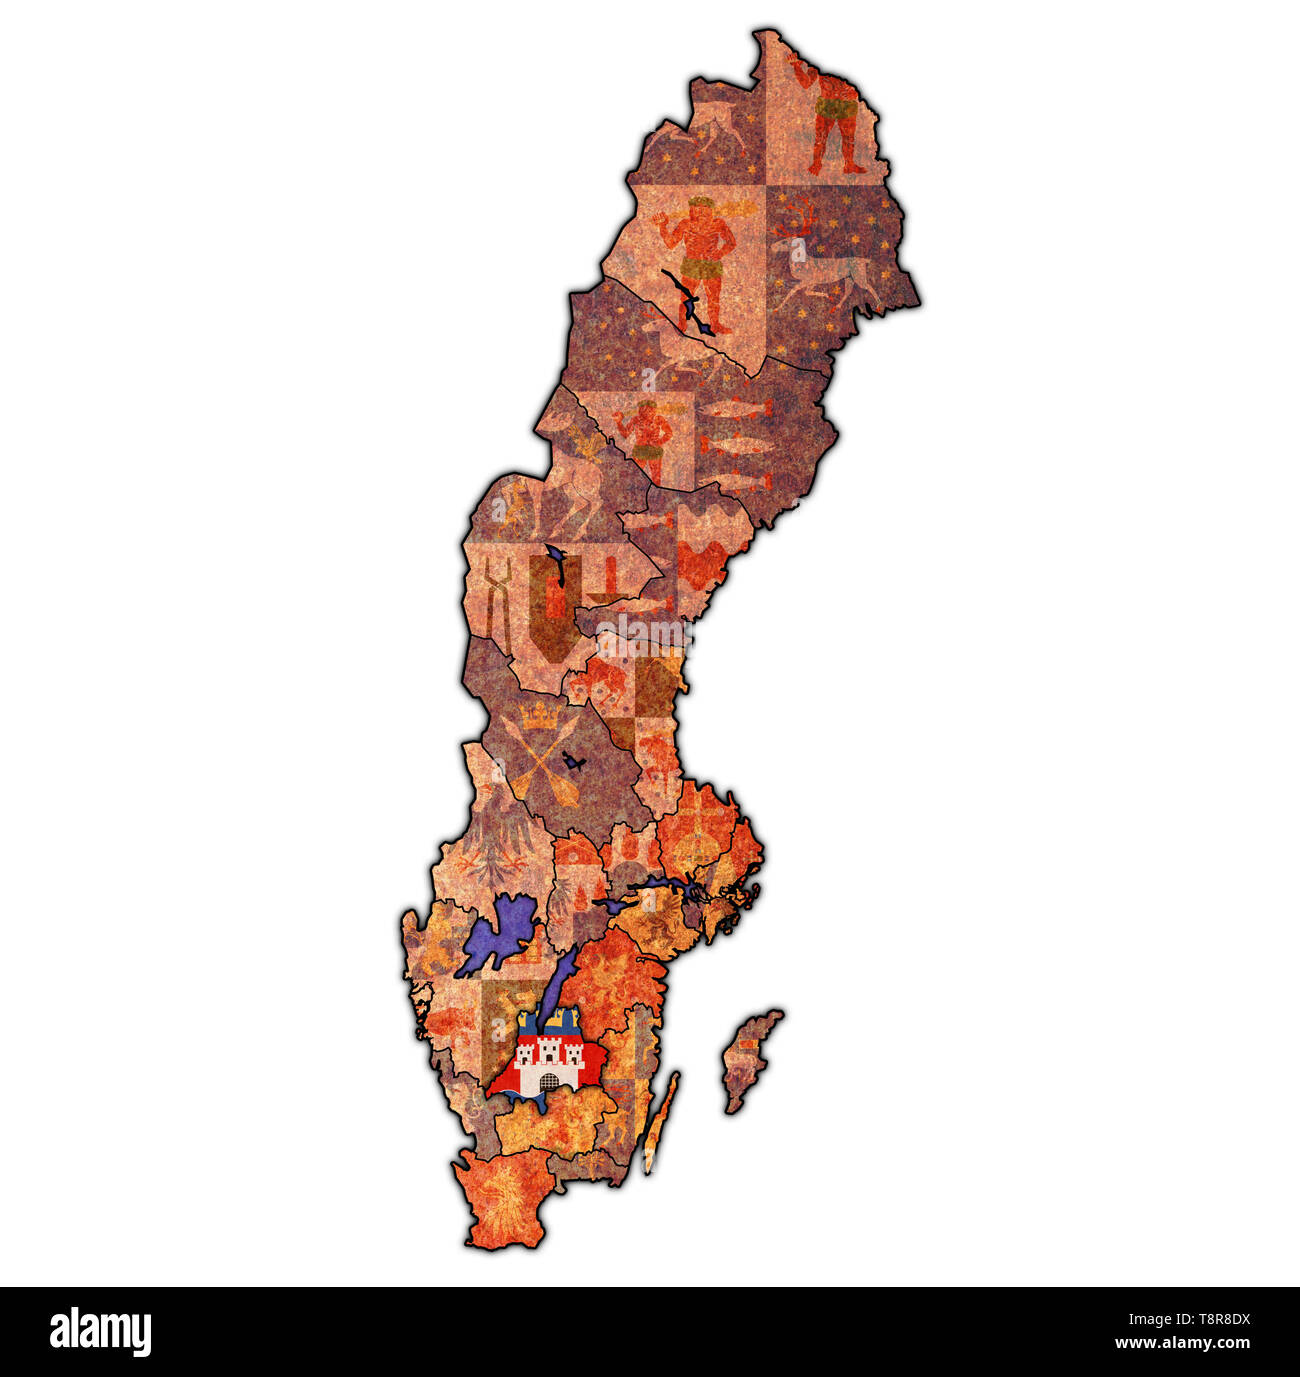 Pavillon de Jonkoping county la carte des divisions administratives de la Suède avec clipping path Banque D'Images